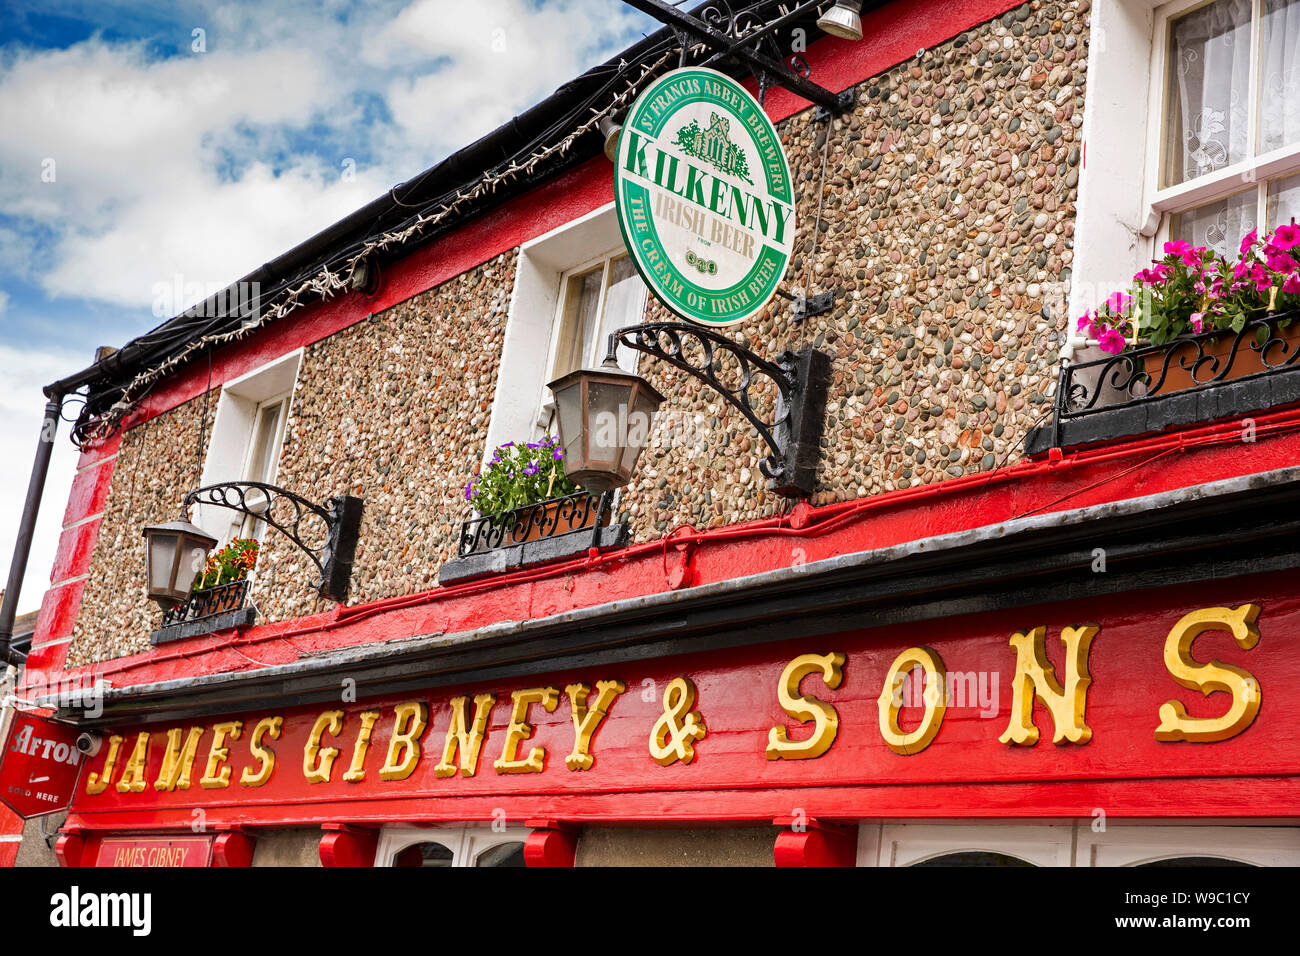 Irland, Co Dublin, Malahide, New Street, traditionellen irischen Pub James Gibney Zeichen hängenden Korb und Kilkenny Bier Werbung Stockfoto